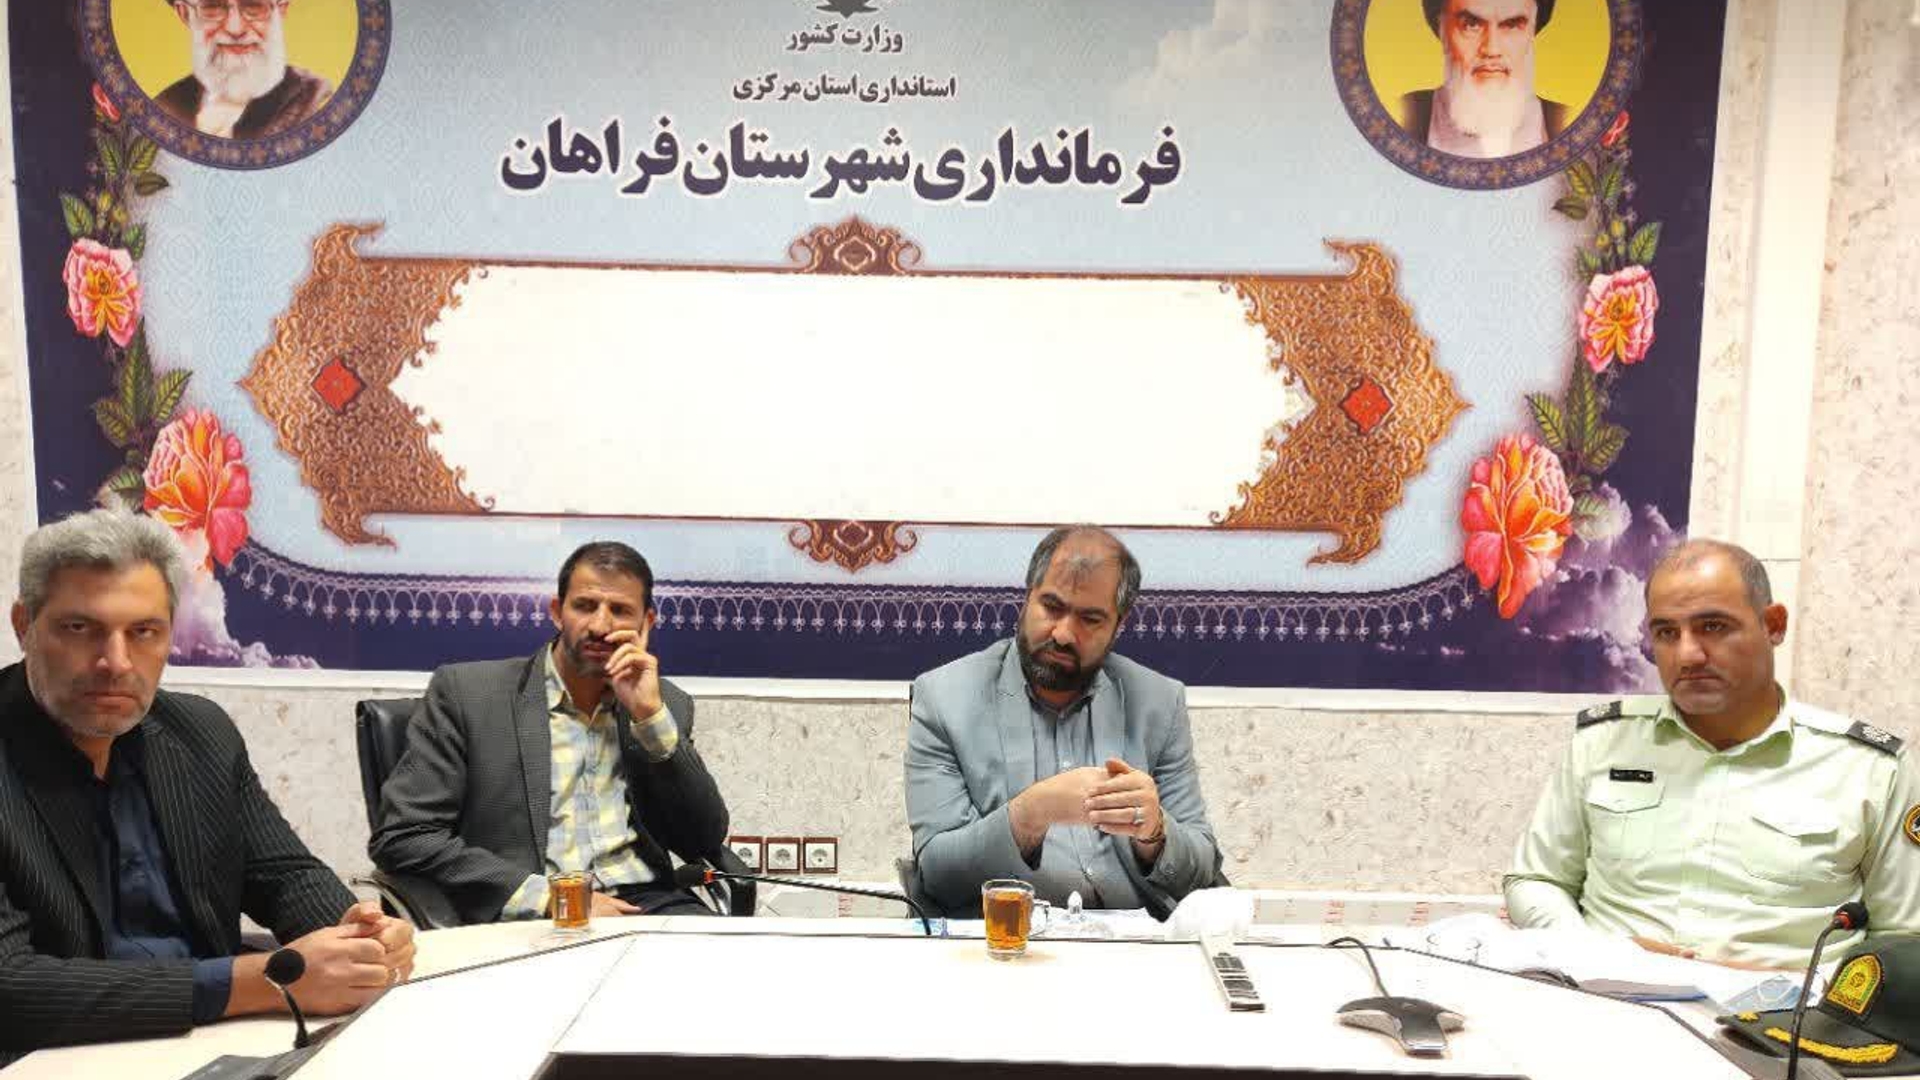 جلسه تشکیل انجمن میراث فرهنگی شهرستان فراهان